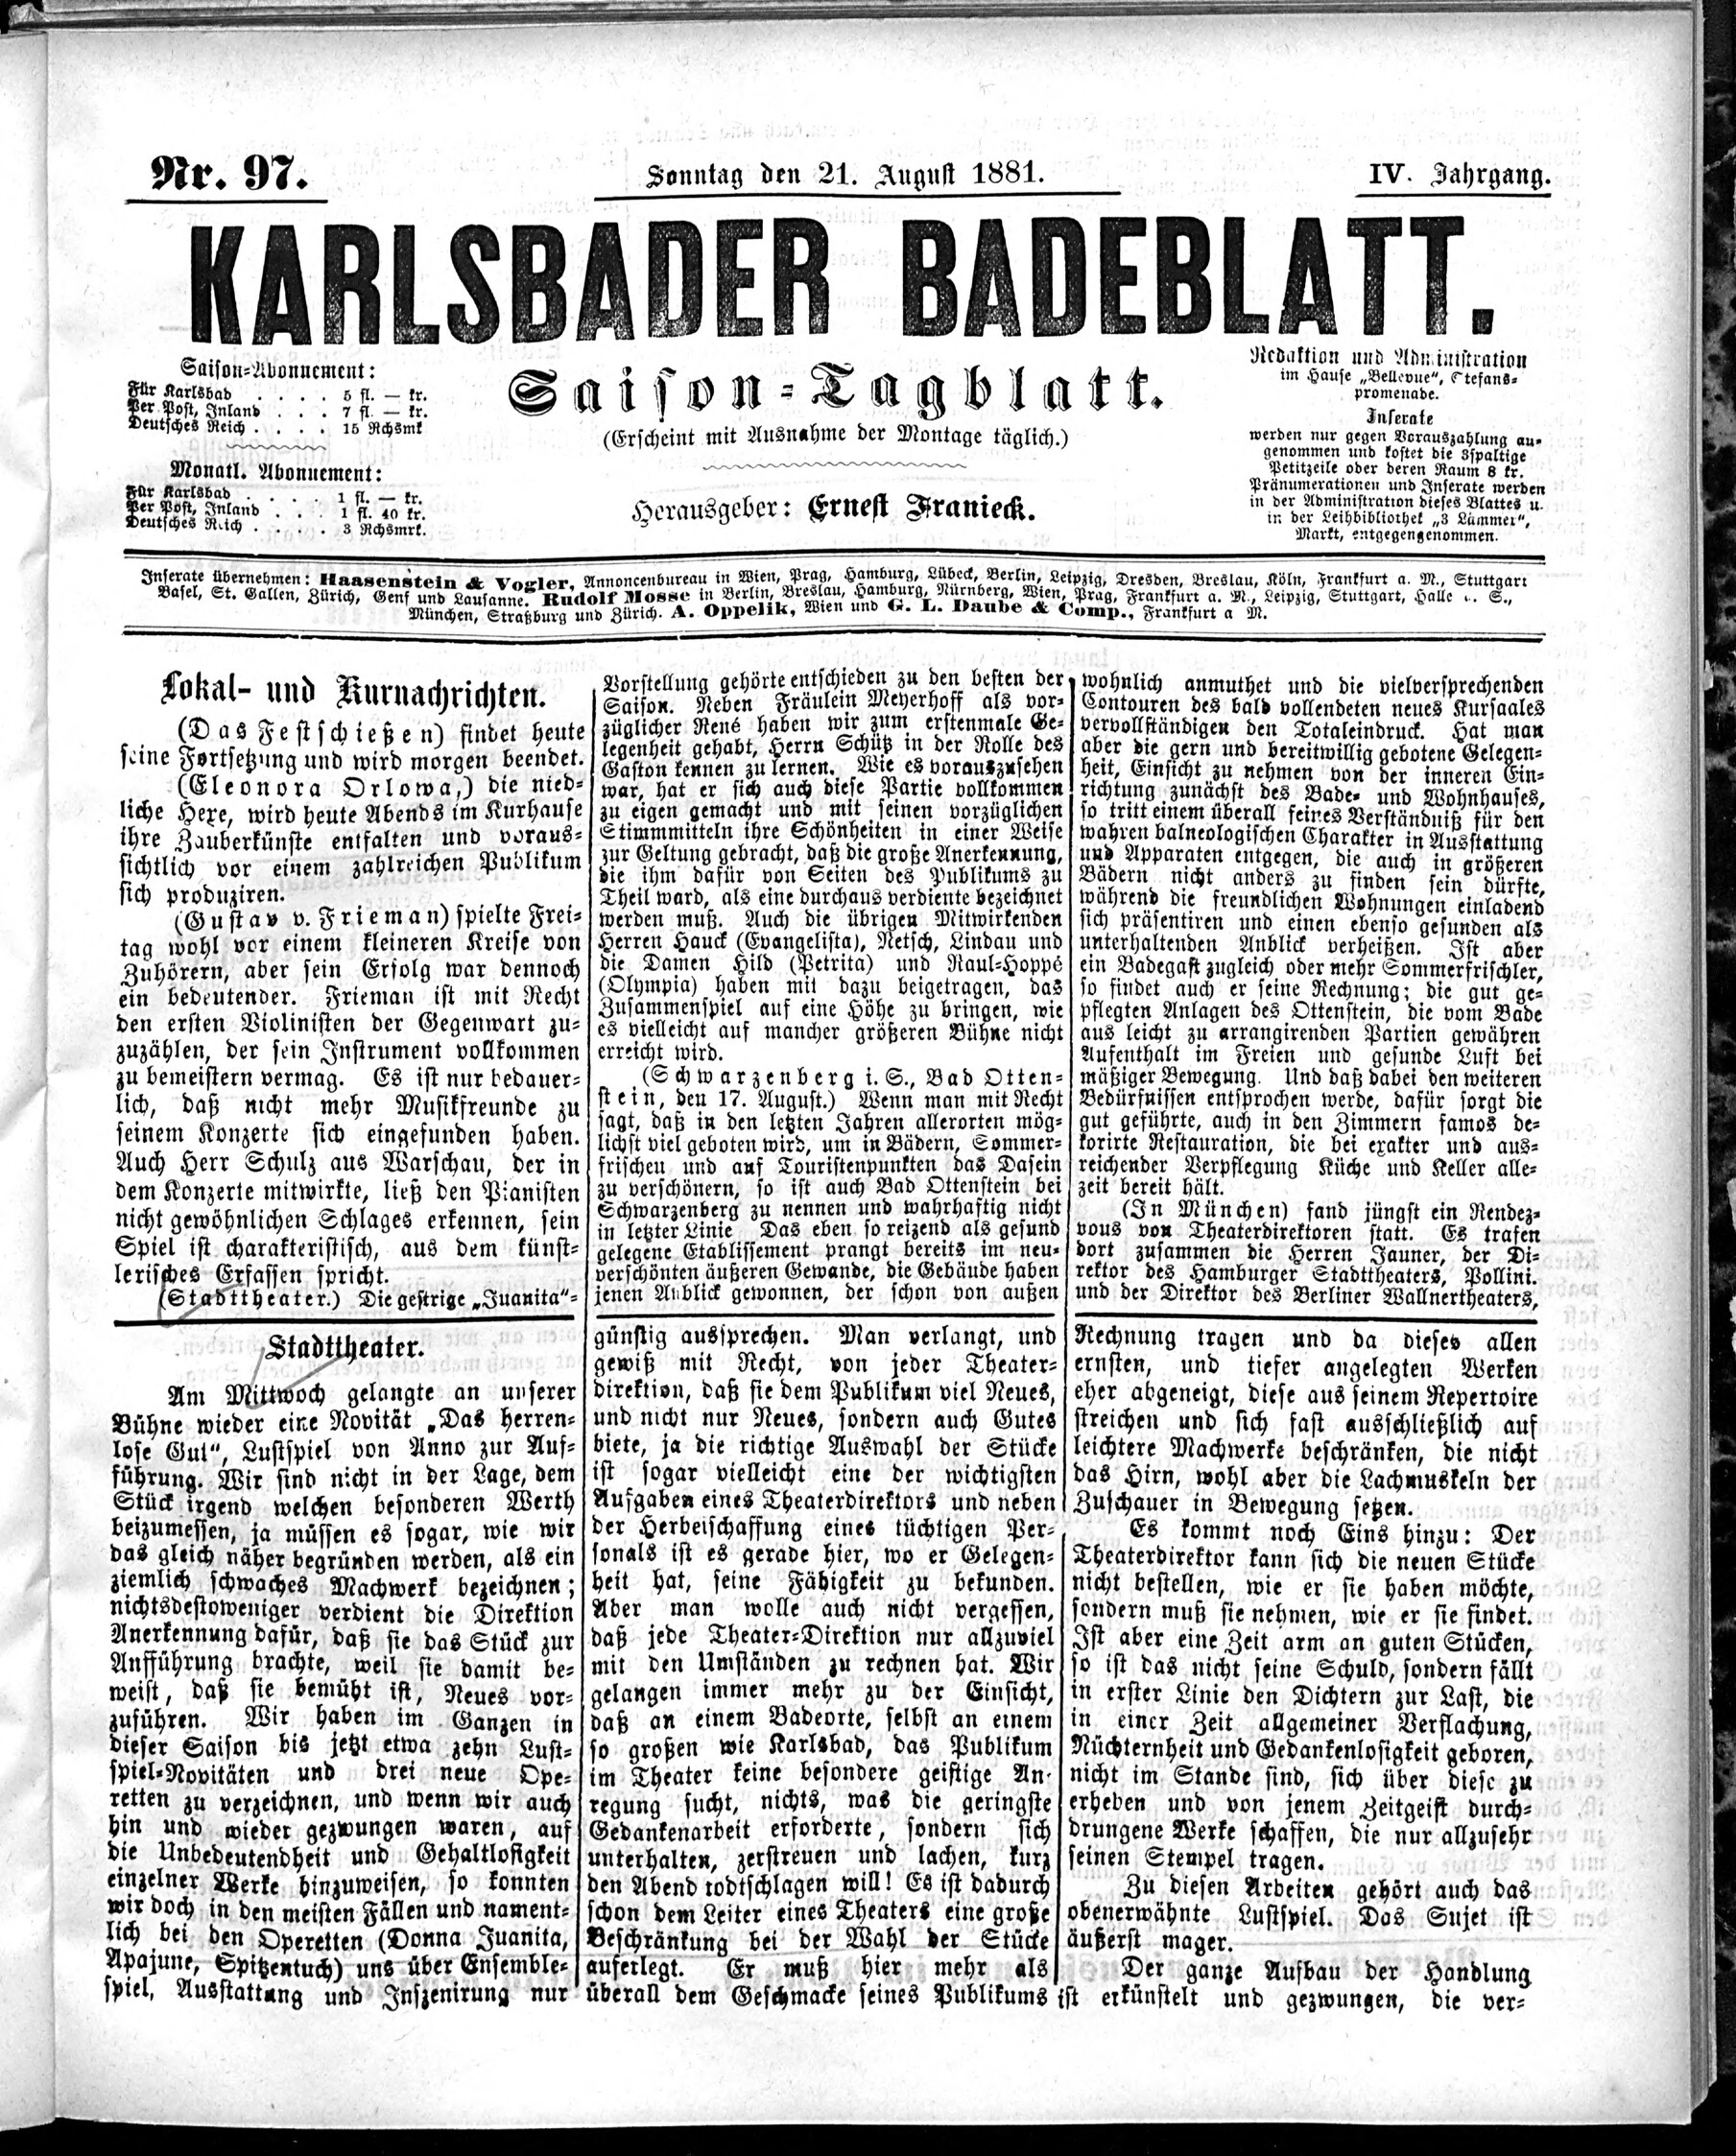 1. karlsbader-badeblatt-1881-08-21-n97_1995